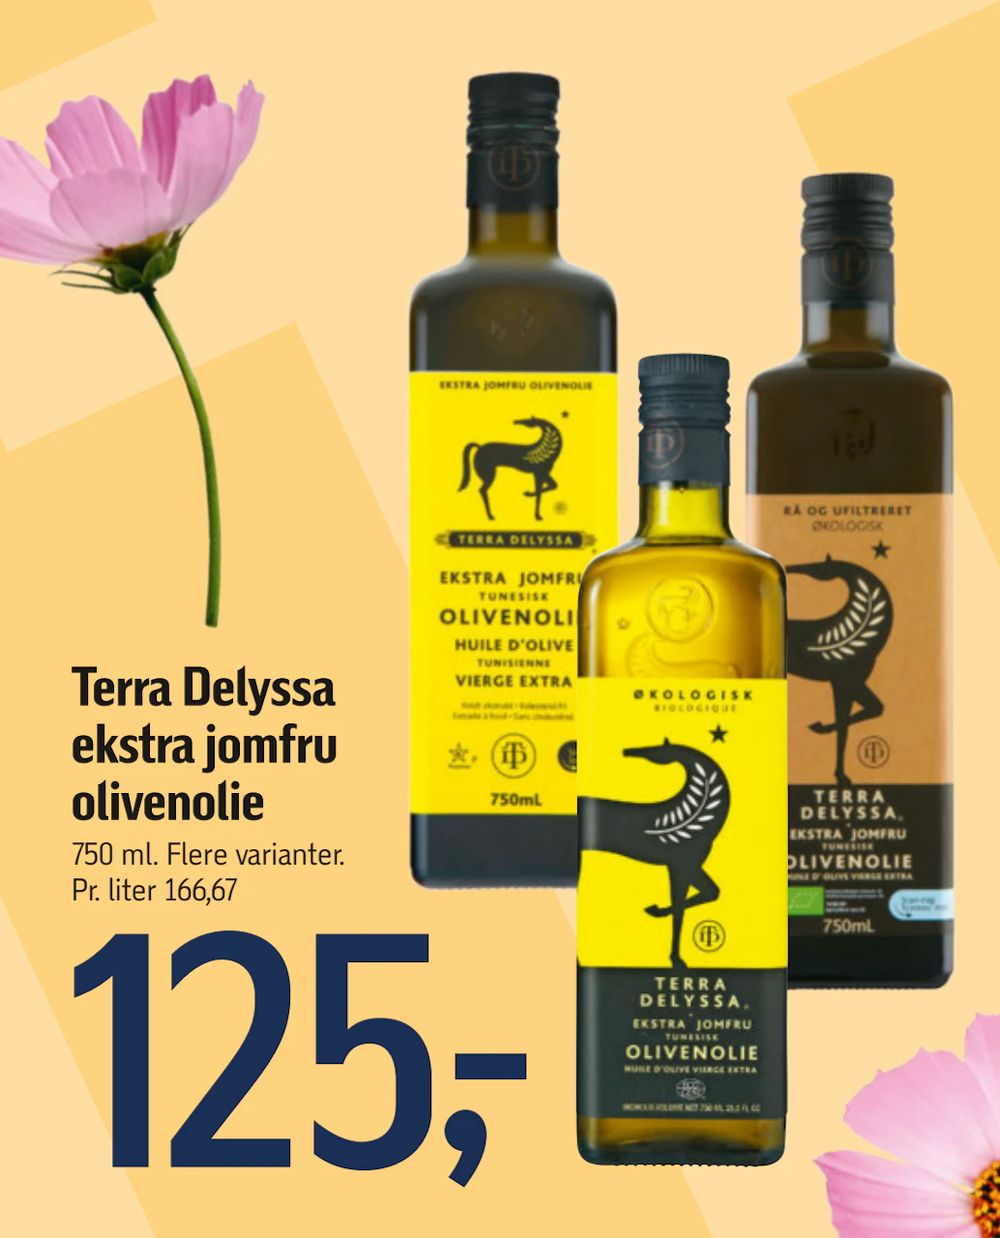 Tilbud på Terra Delyssa ekstra jomfru olivenolie fra føtex til 125 kr.